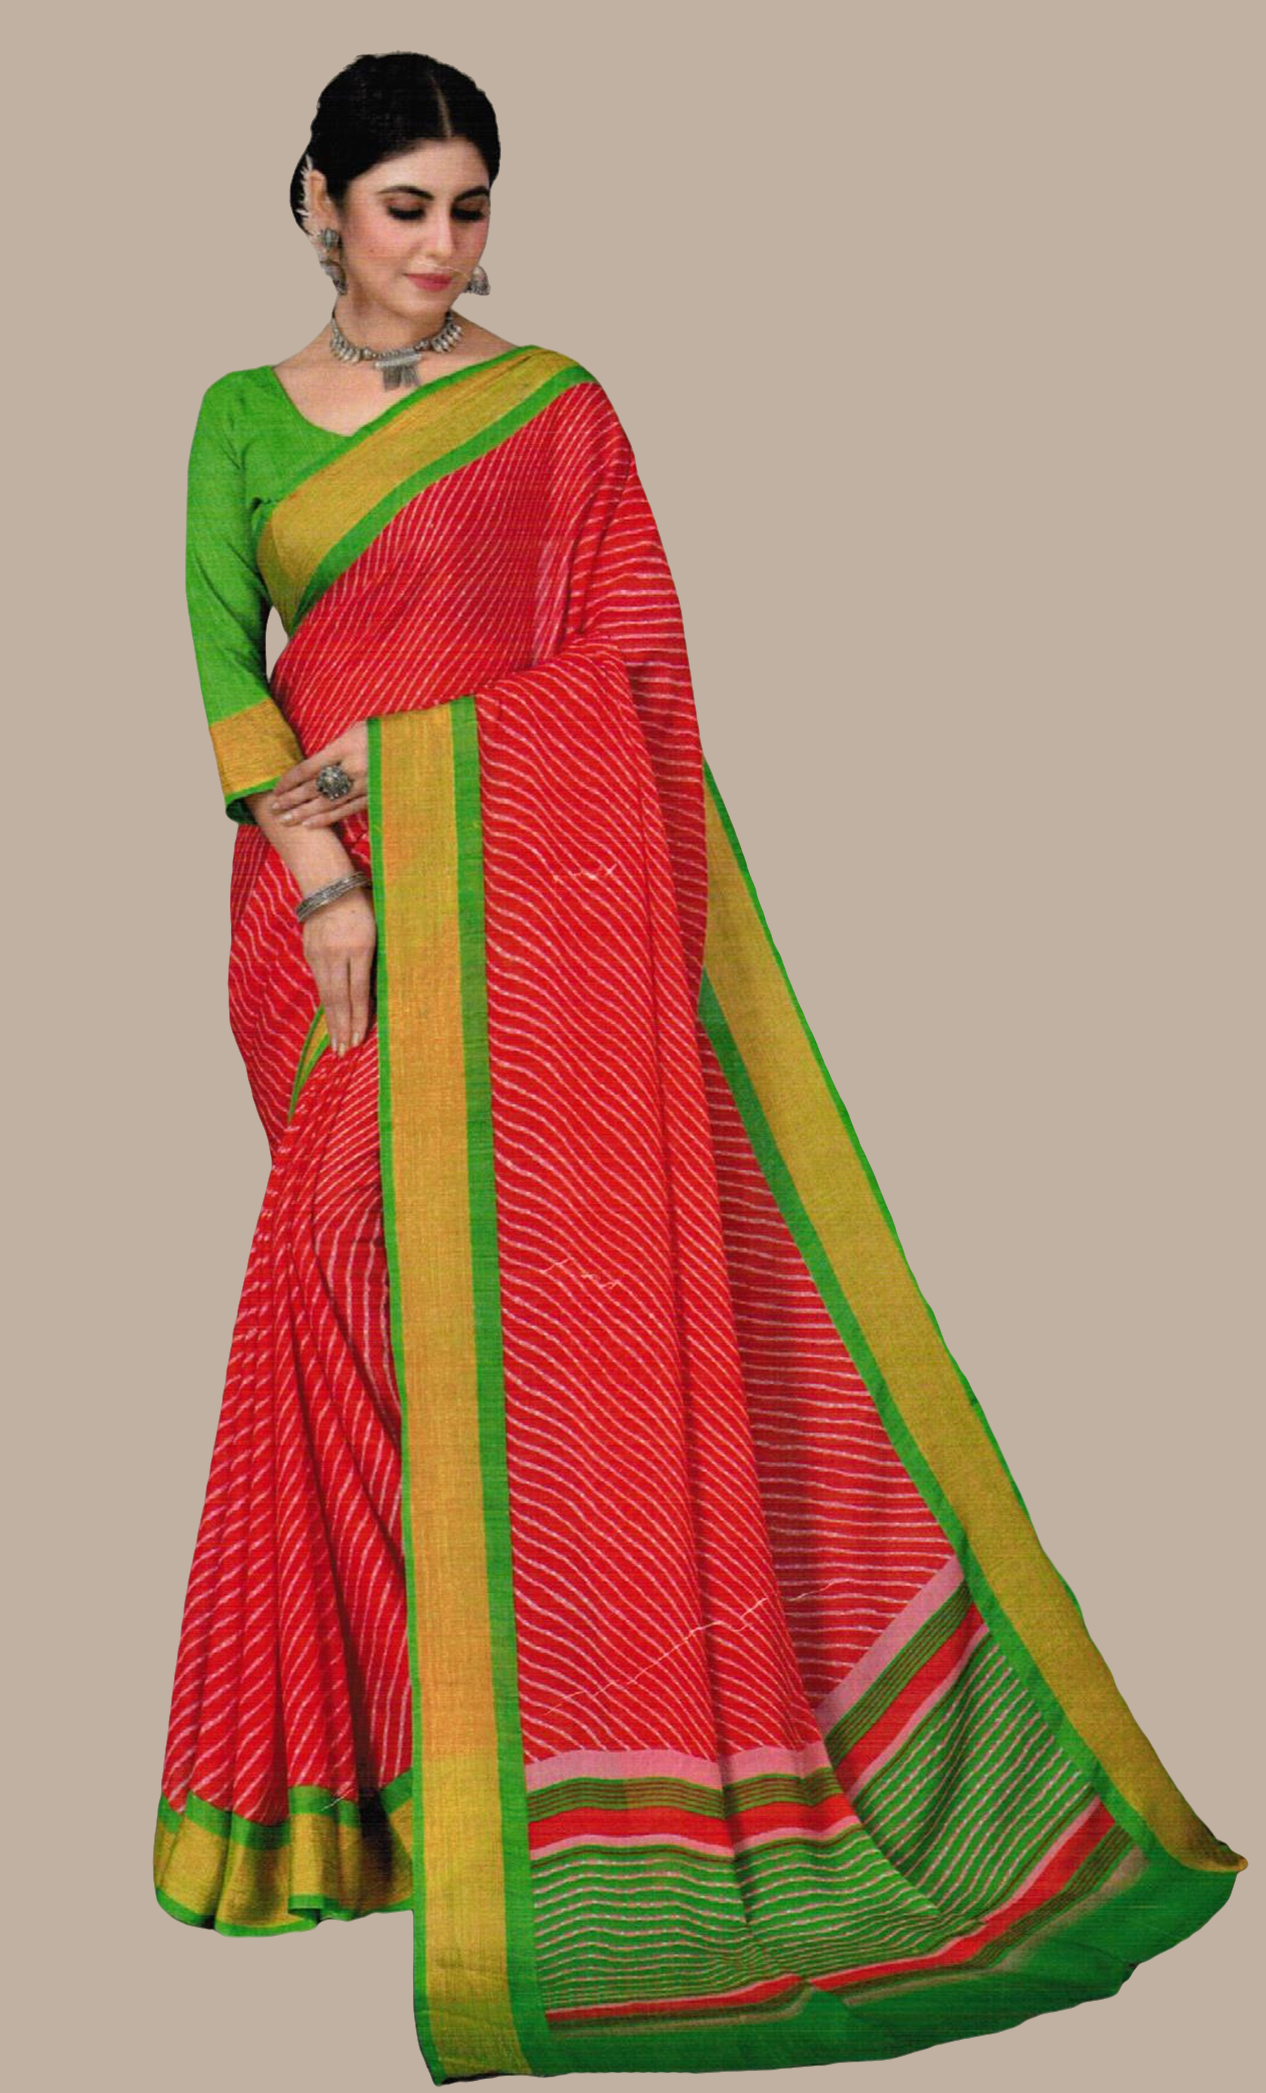 Coral Striped Printed Sari